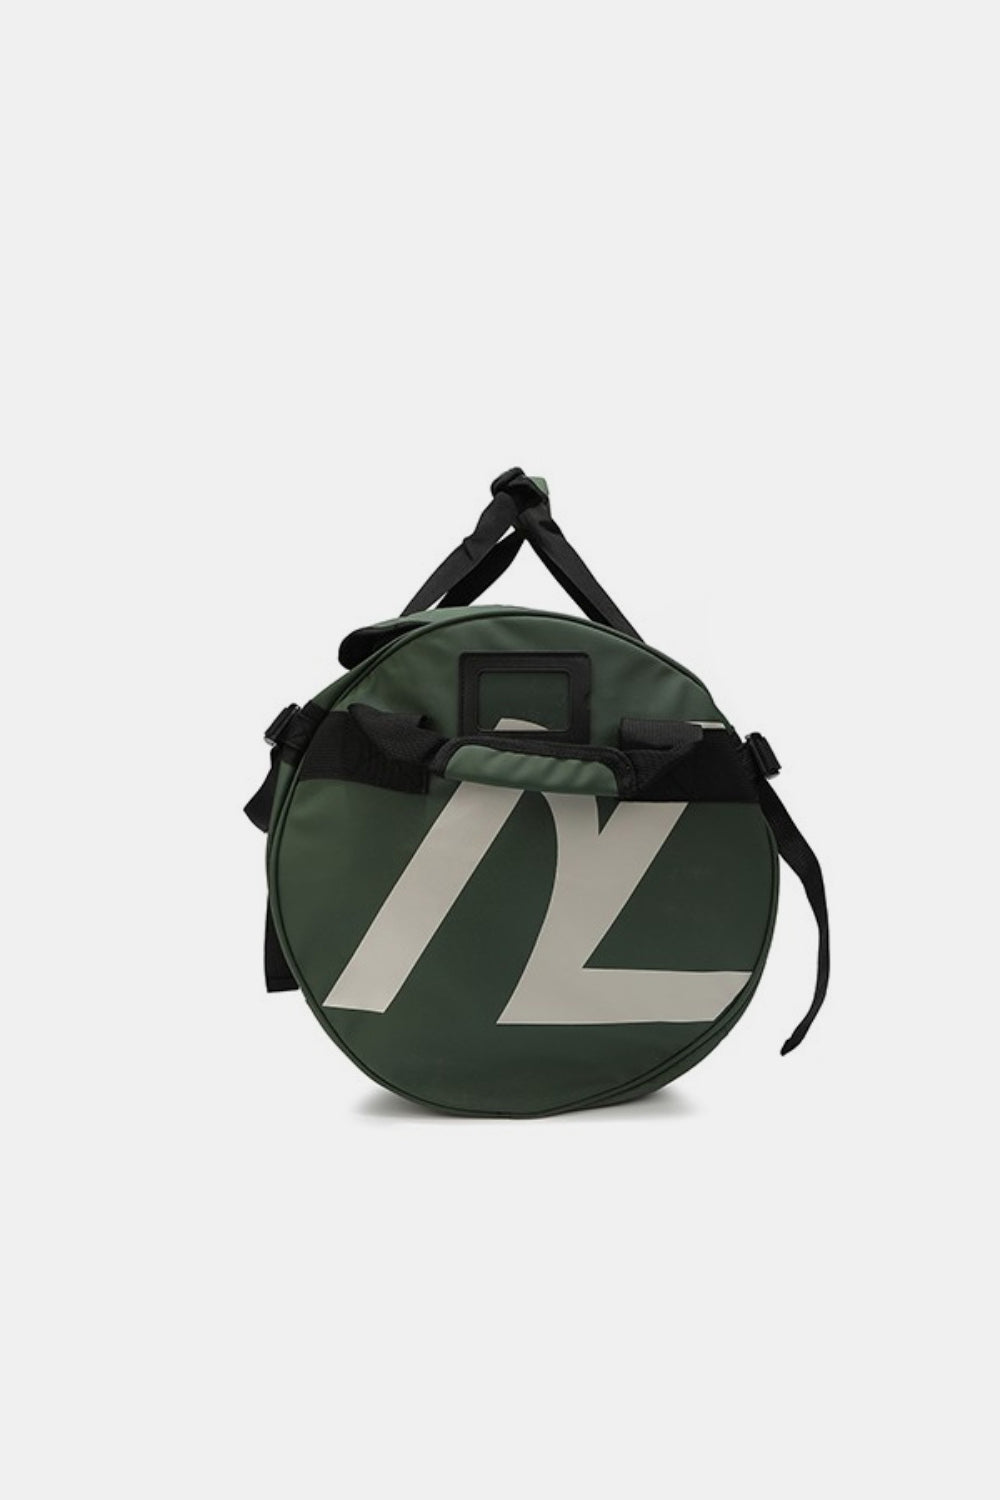 TEEK - NL Large Duffel Bag BAG TEEK Trend   